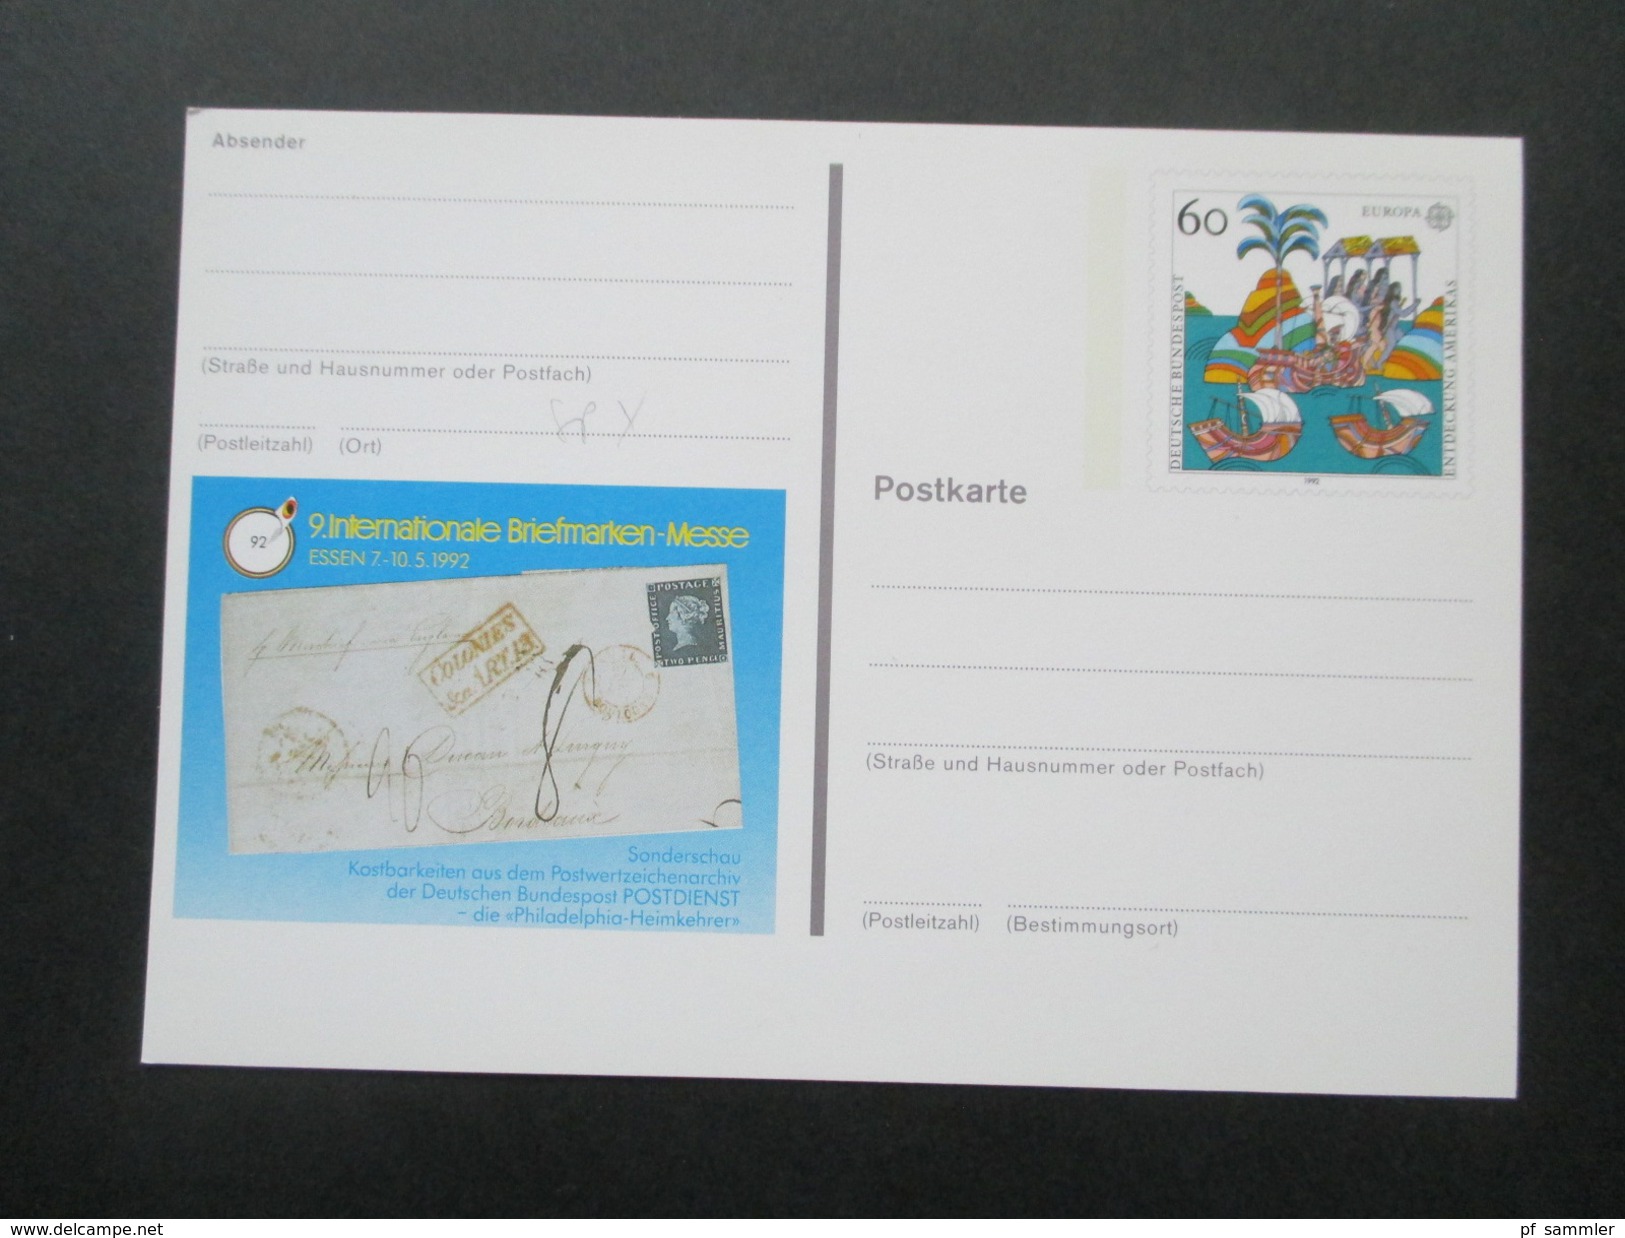 BRD Ganzsachen 1980 - 98 Sonderpostkarten! 82 Stück! Briefmarken Ausstellungen usw. ungebraucht / guter Zustand!